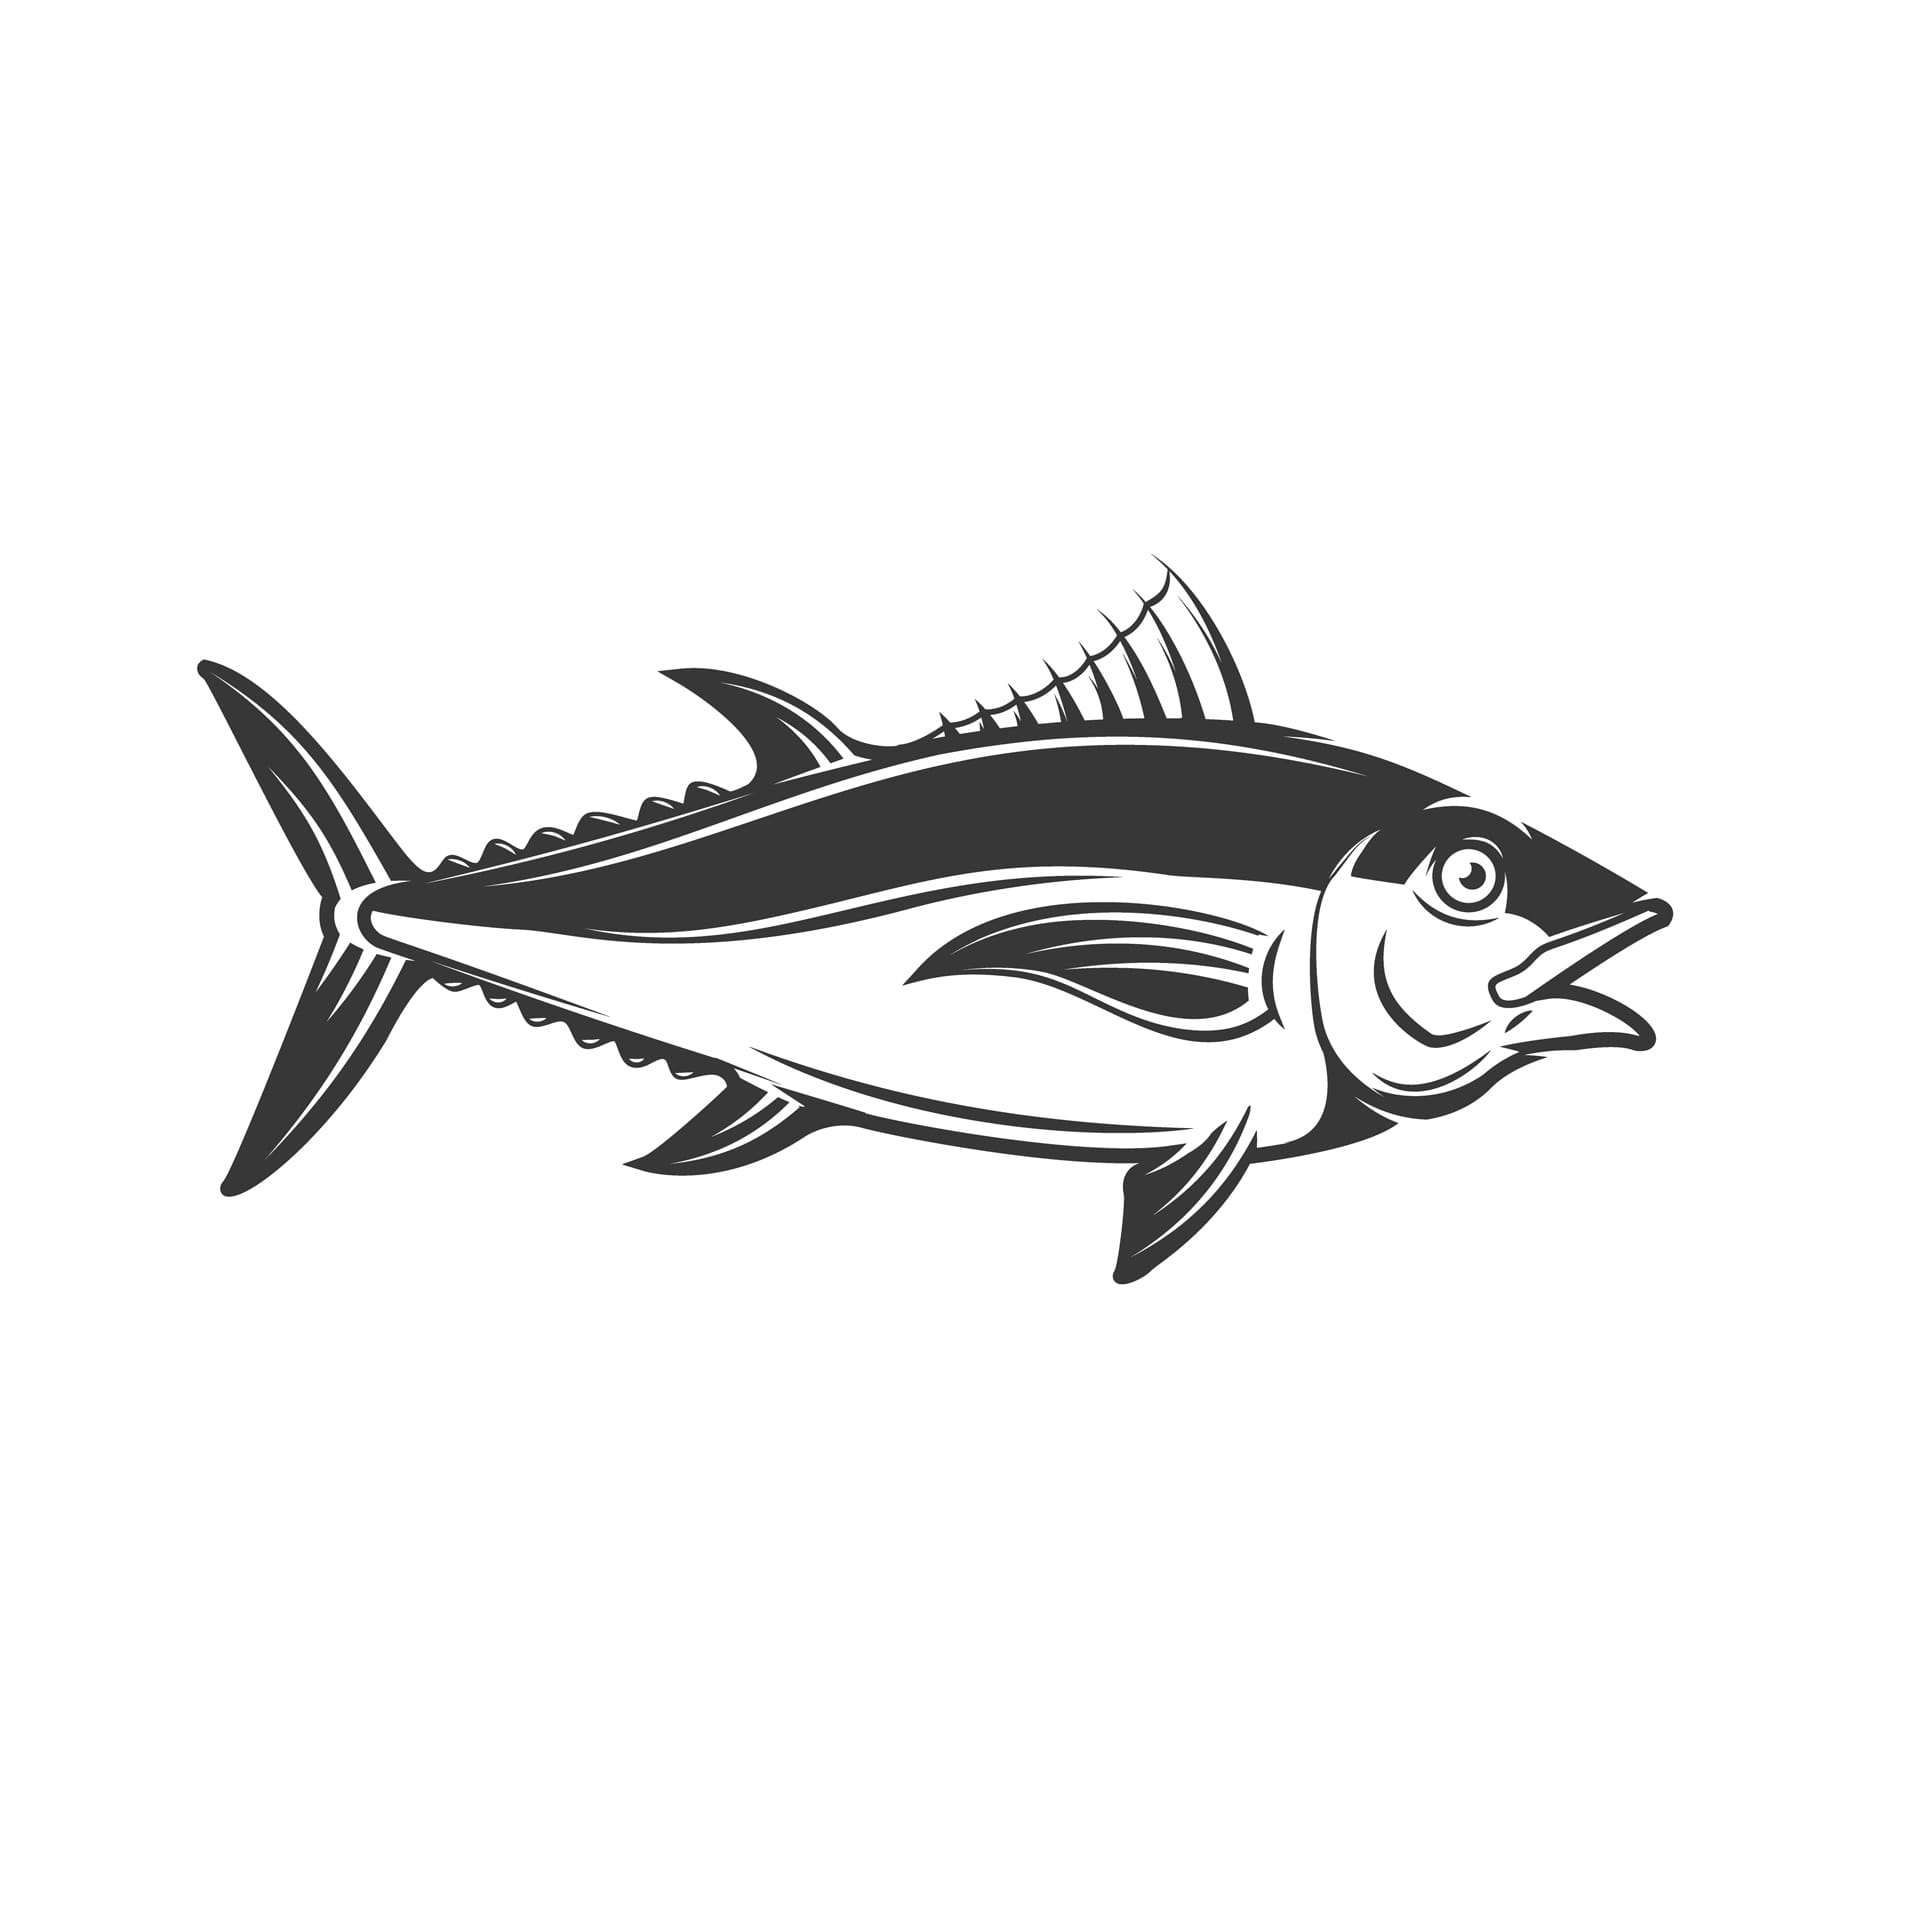 Fishing fish water logo icon vintage design